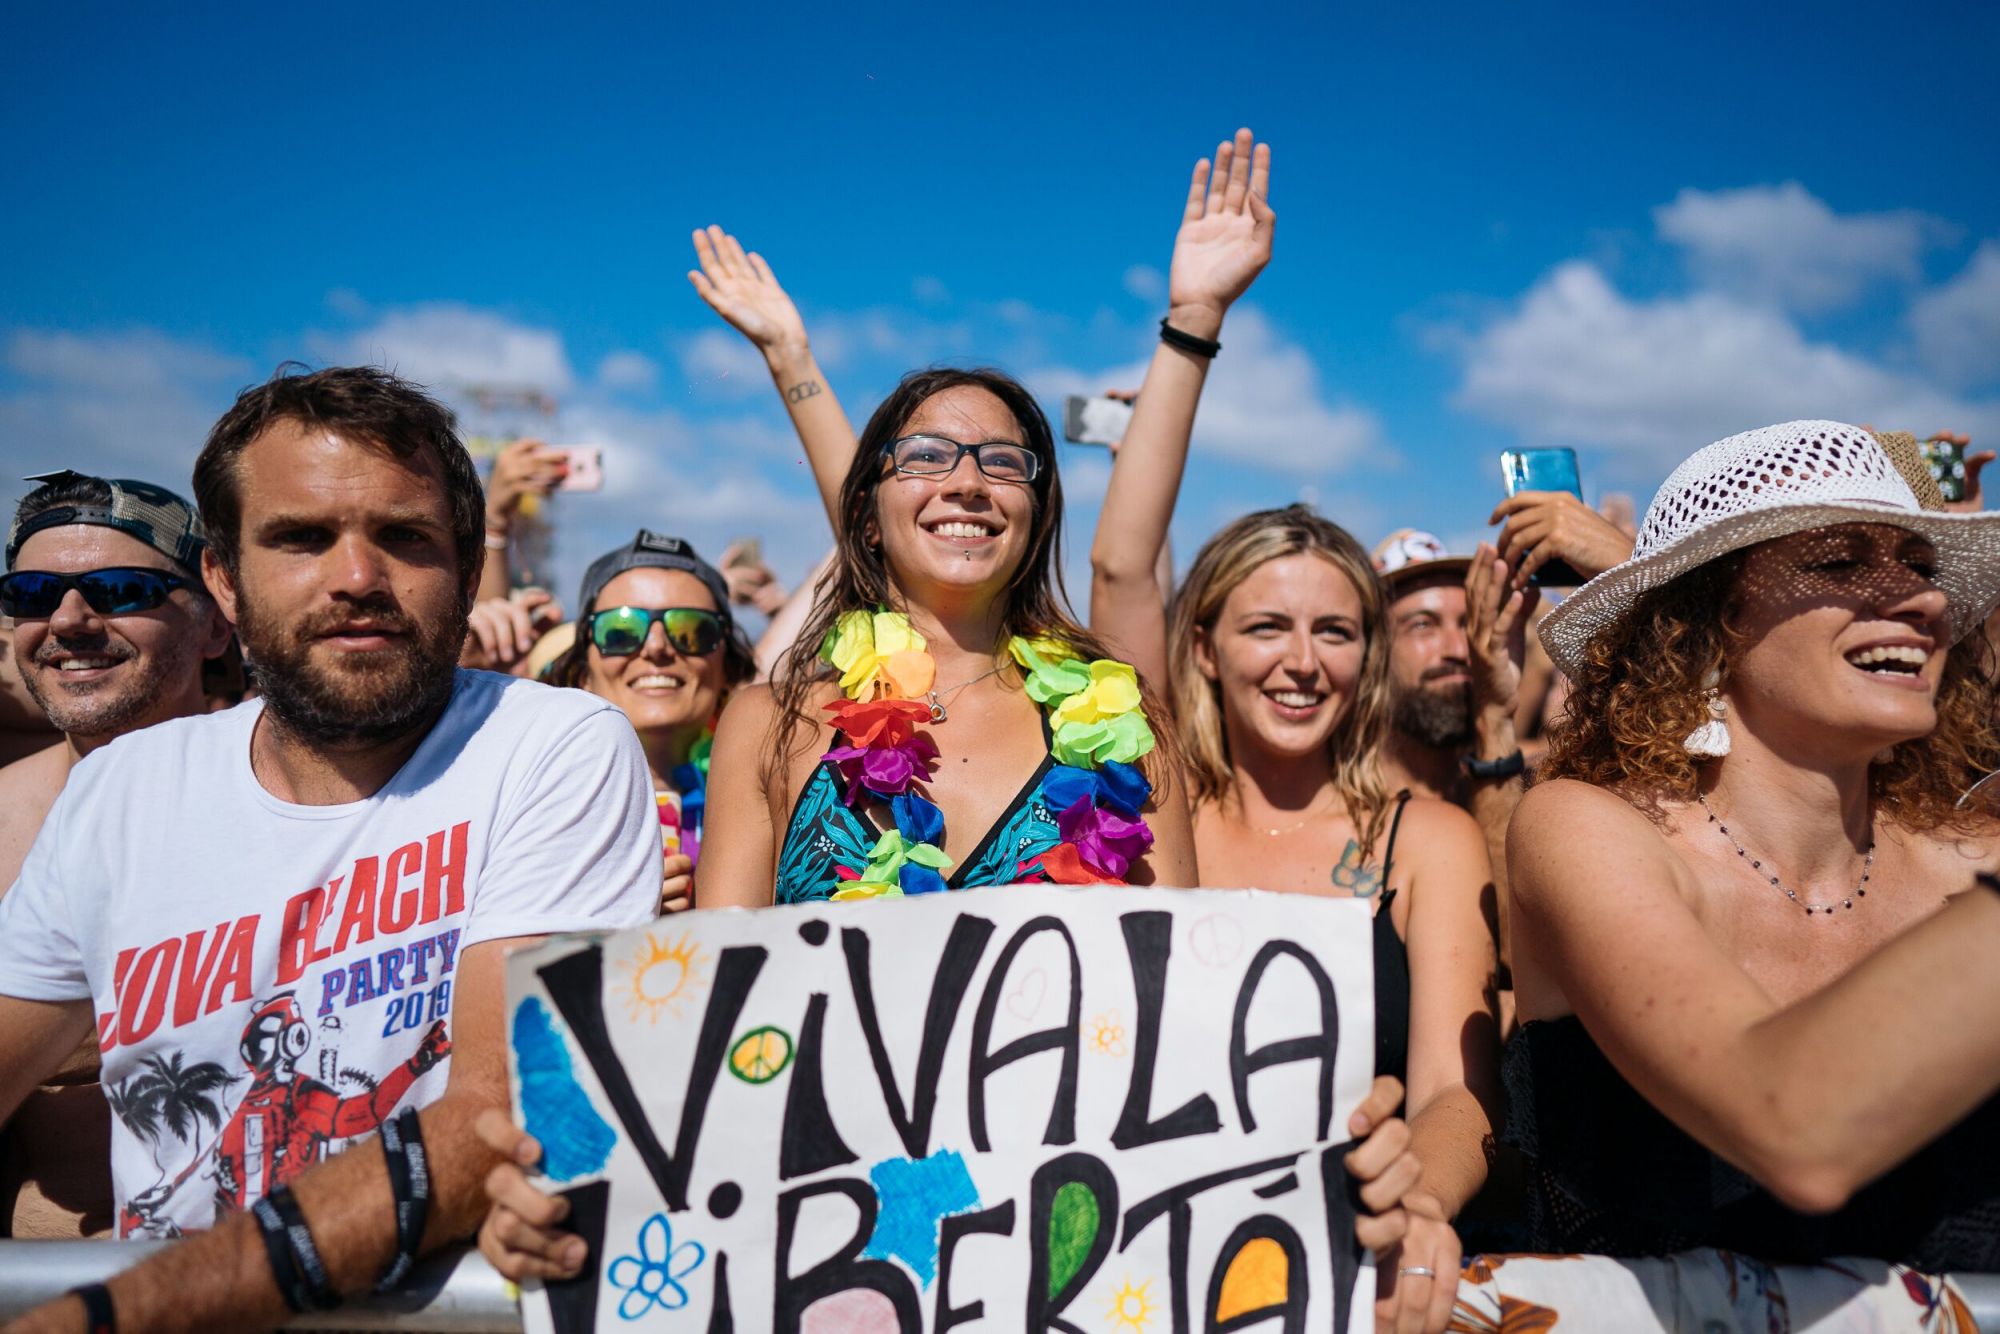 Jova Beach Party, a Viareggio la festa più bella dell’estate: foto e video